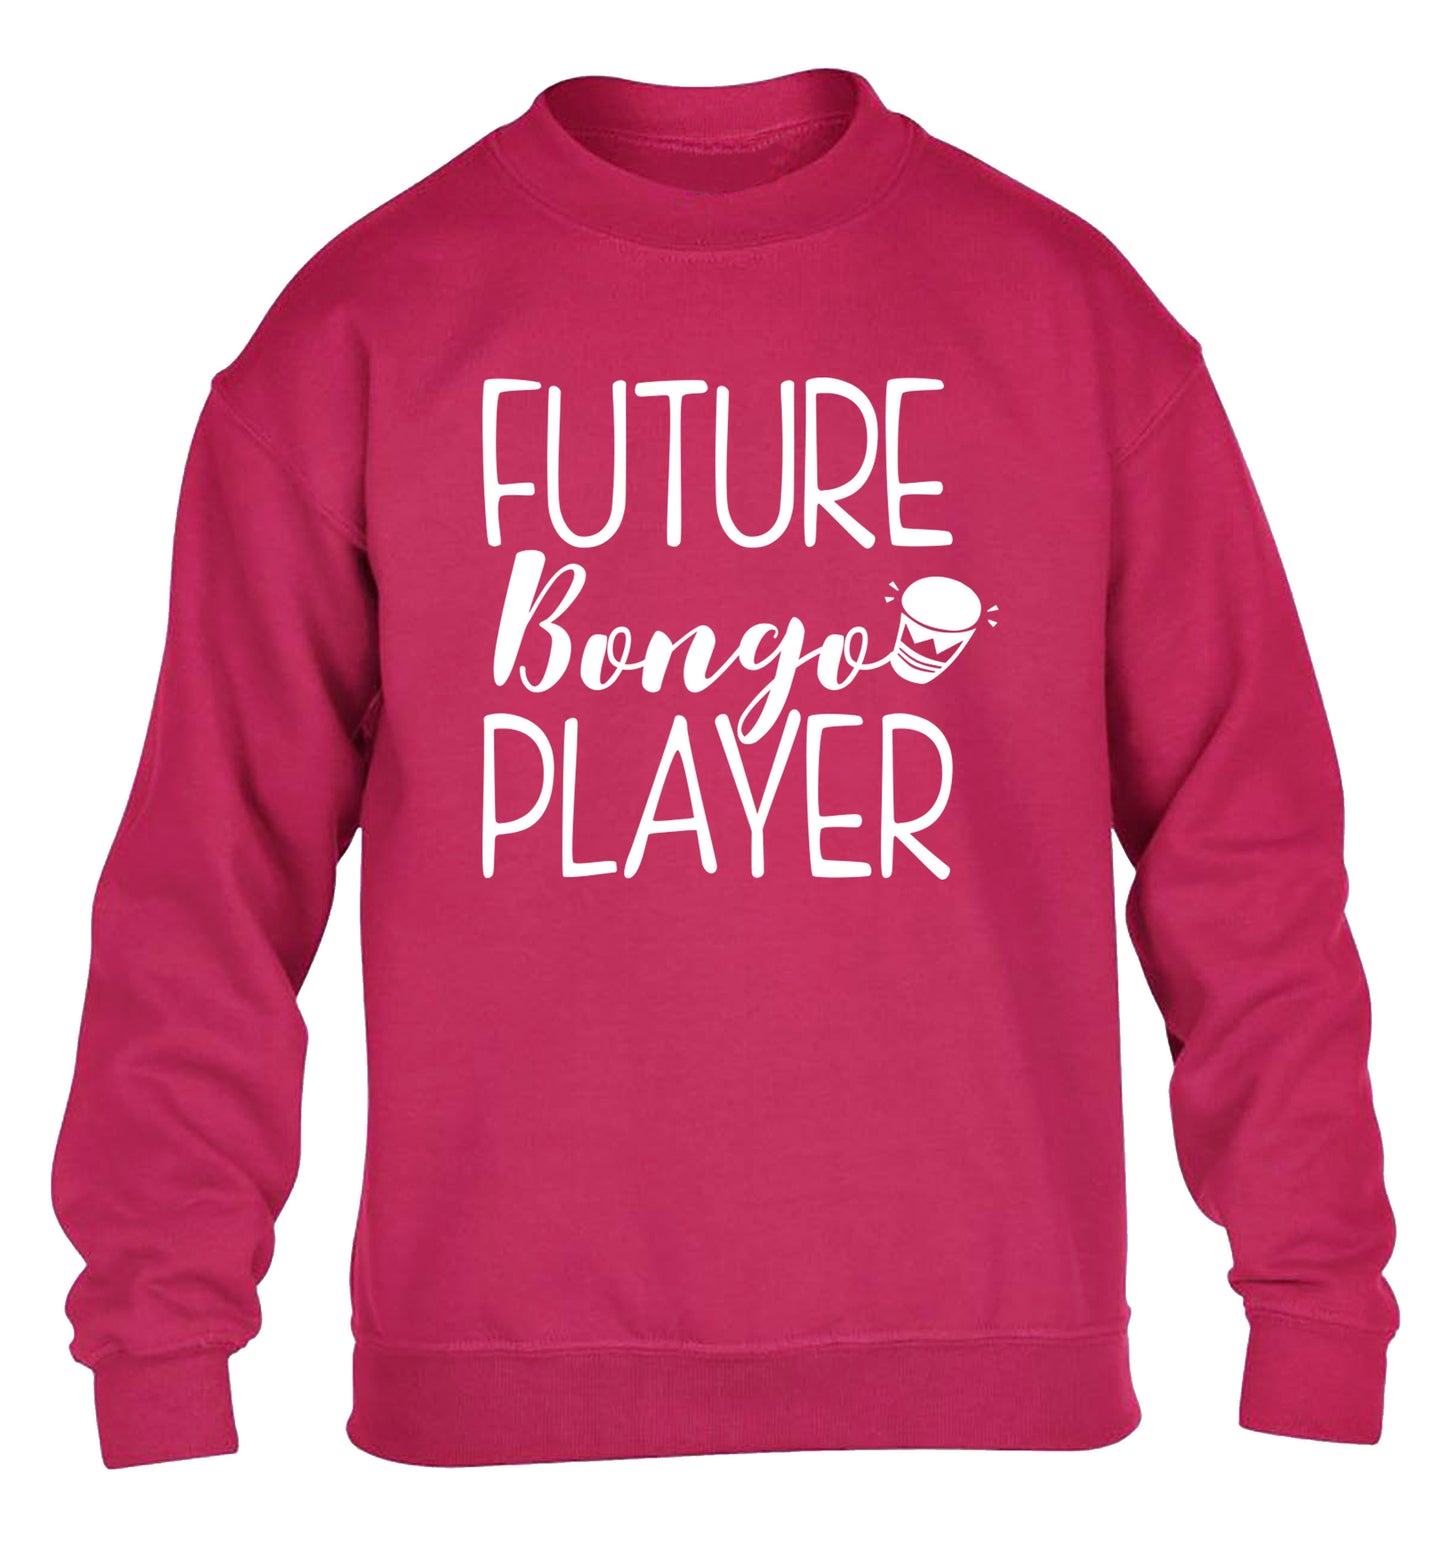 Future bongo player children's pink sweater 12-14 Years